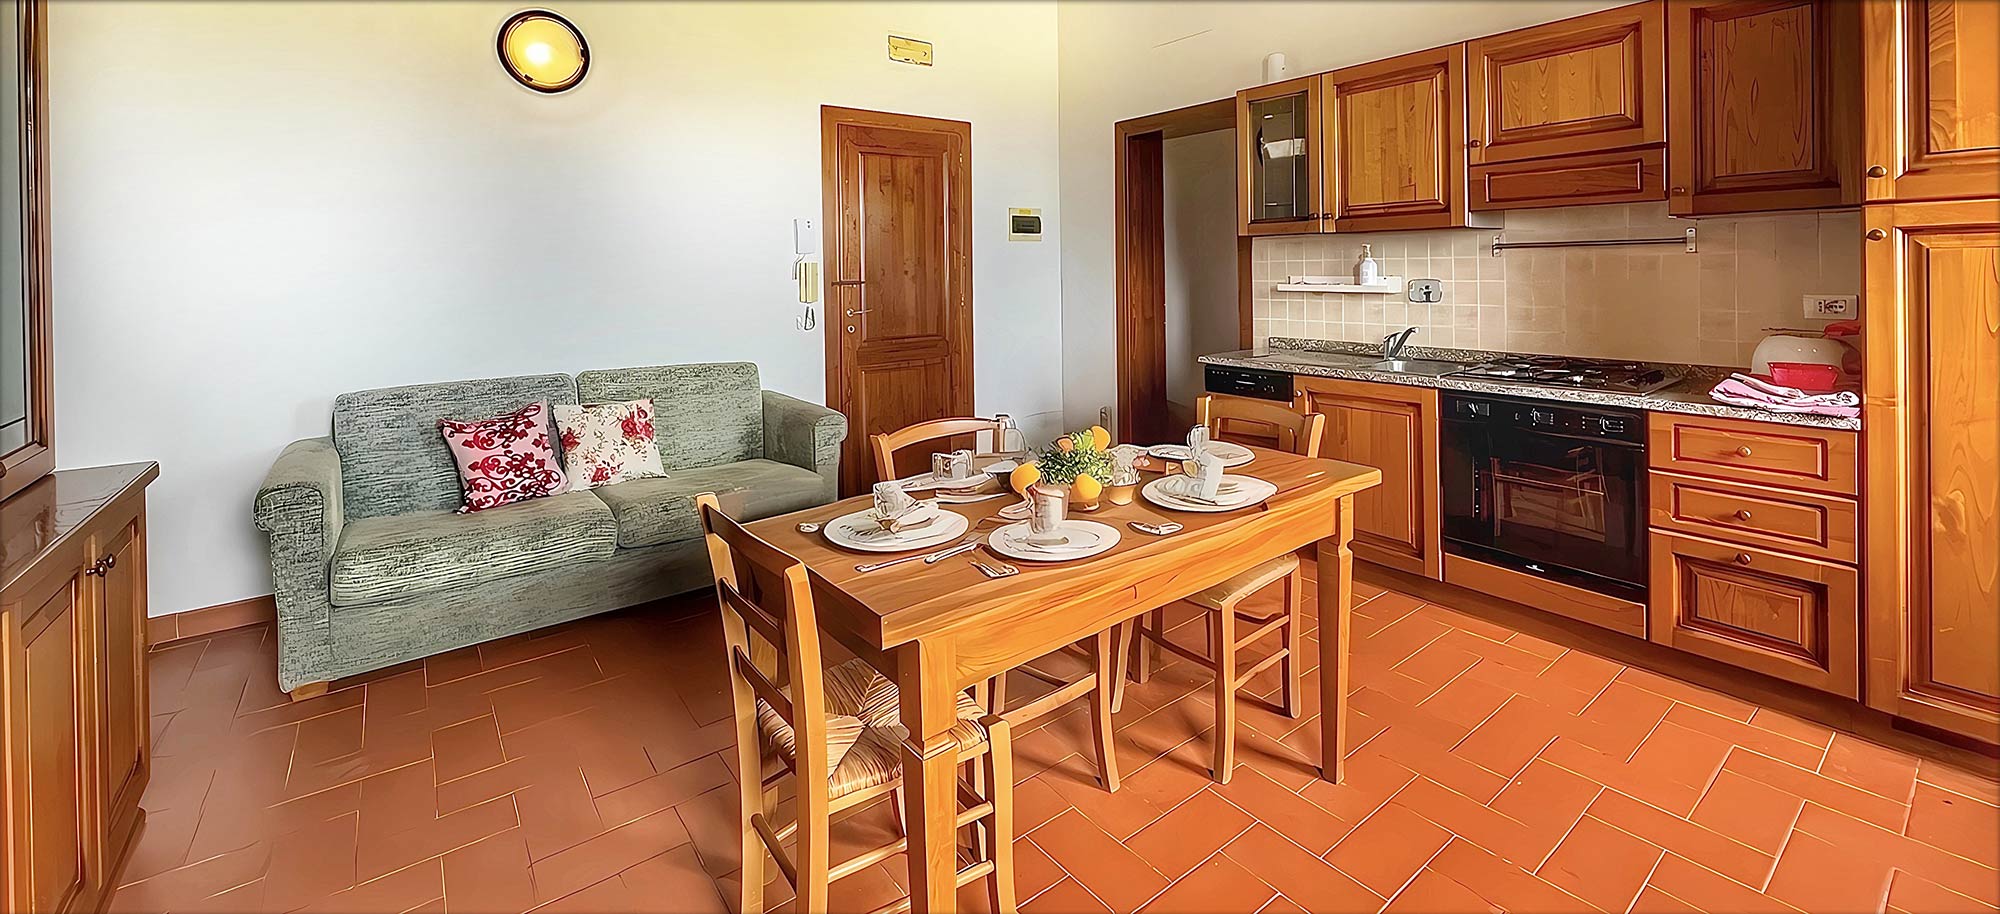 Corte Tommasi - Vakantie-appartementen in Toscane - 300 - Toscaans appartement met zwembad